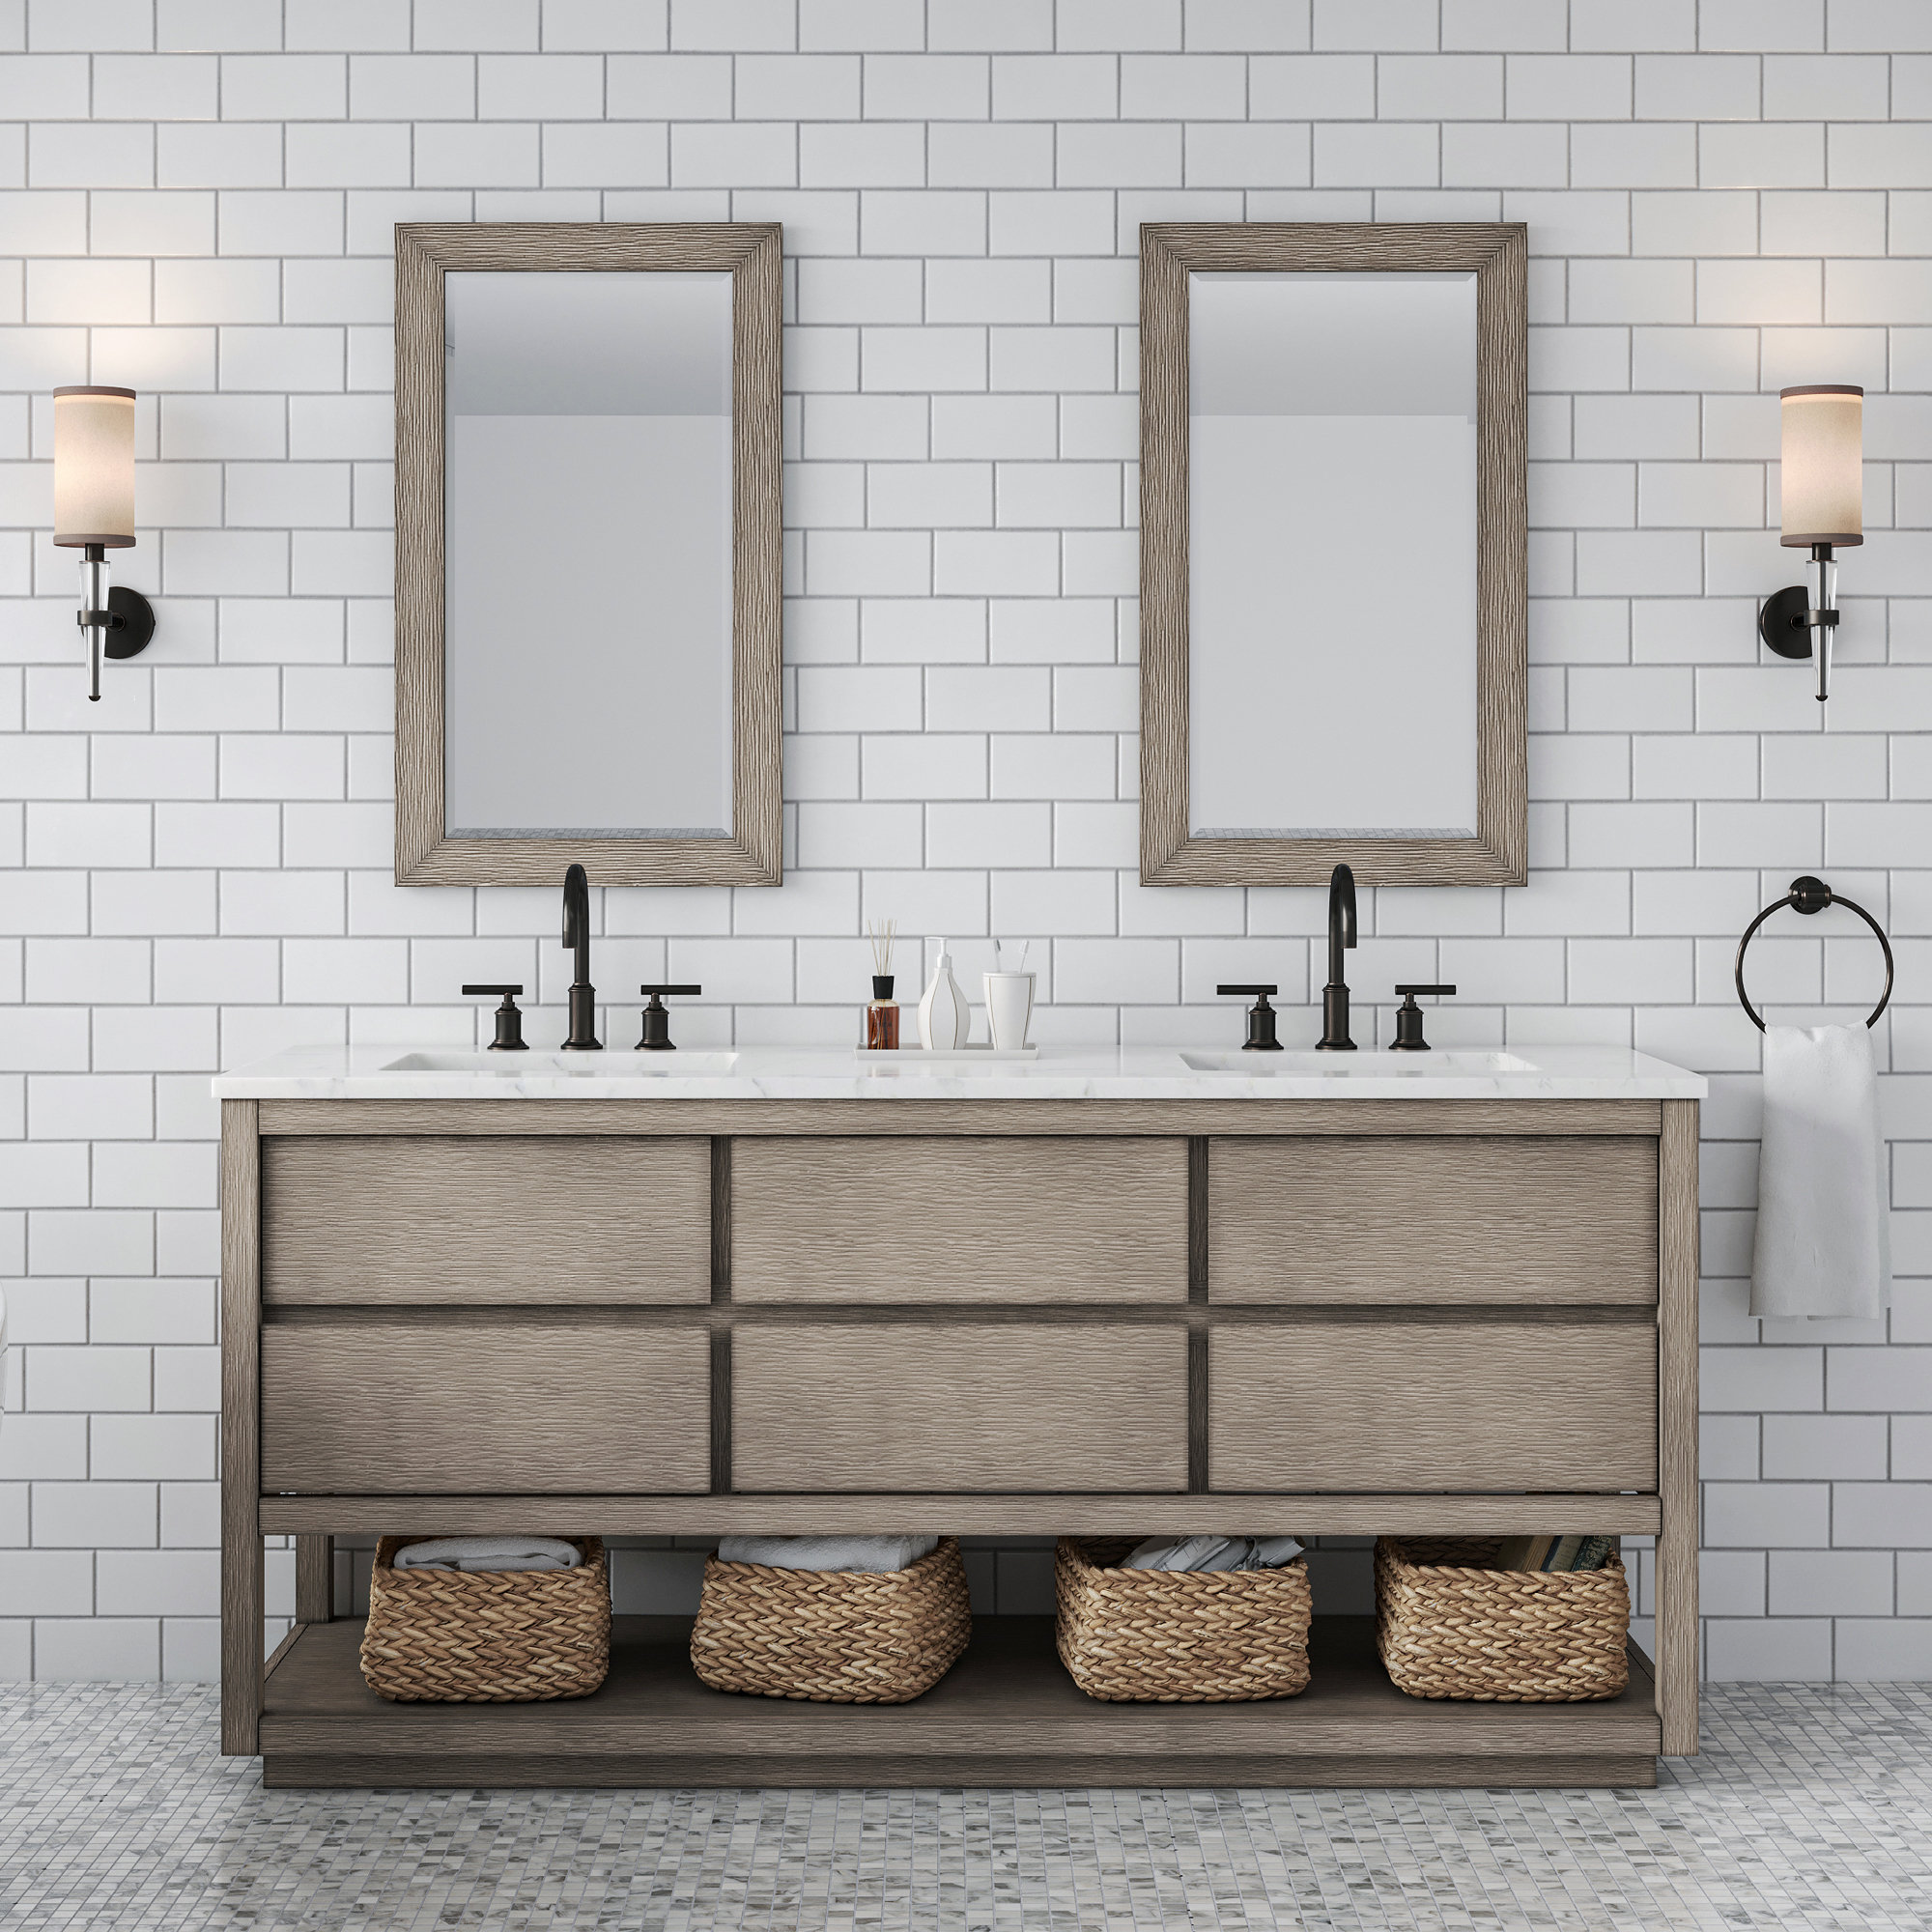 Organizing Small Bathroom Sinks - Graceful Order